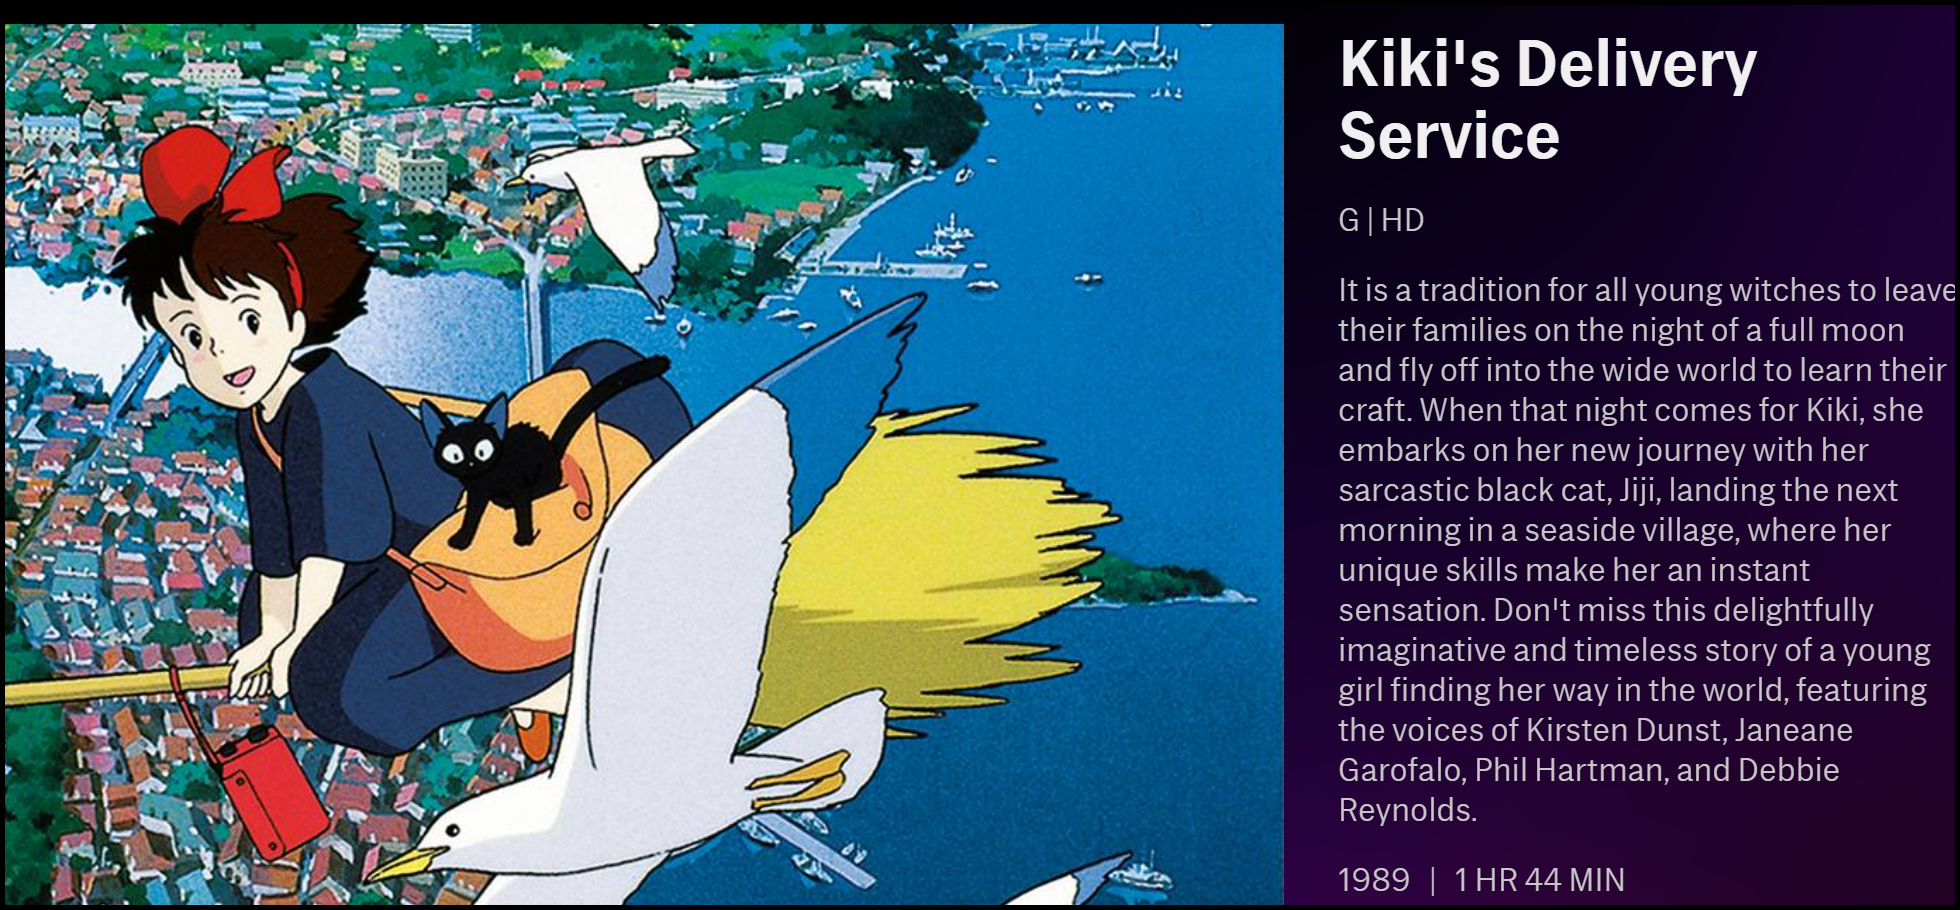 La description de "Service de livraison de Kiki" sur HBO Max.